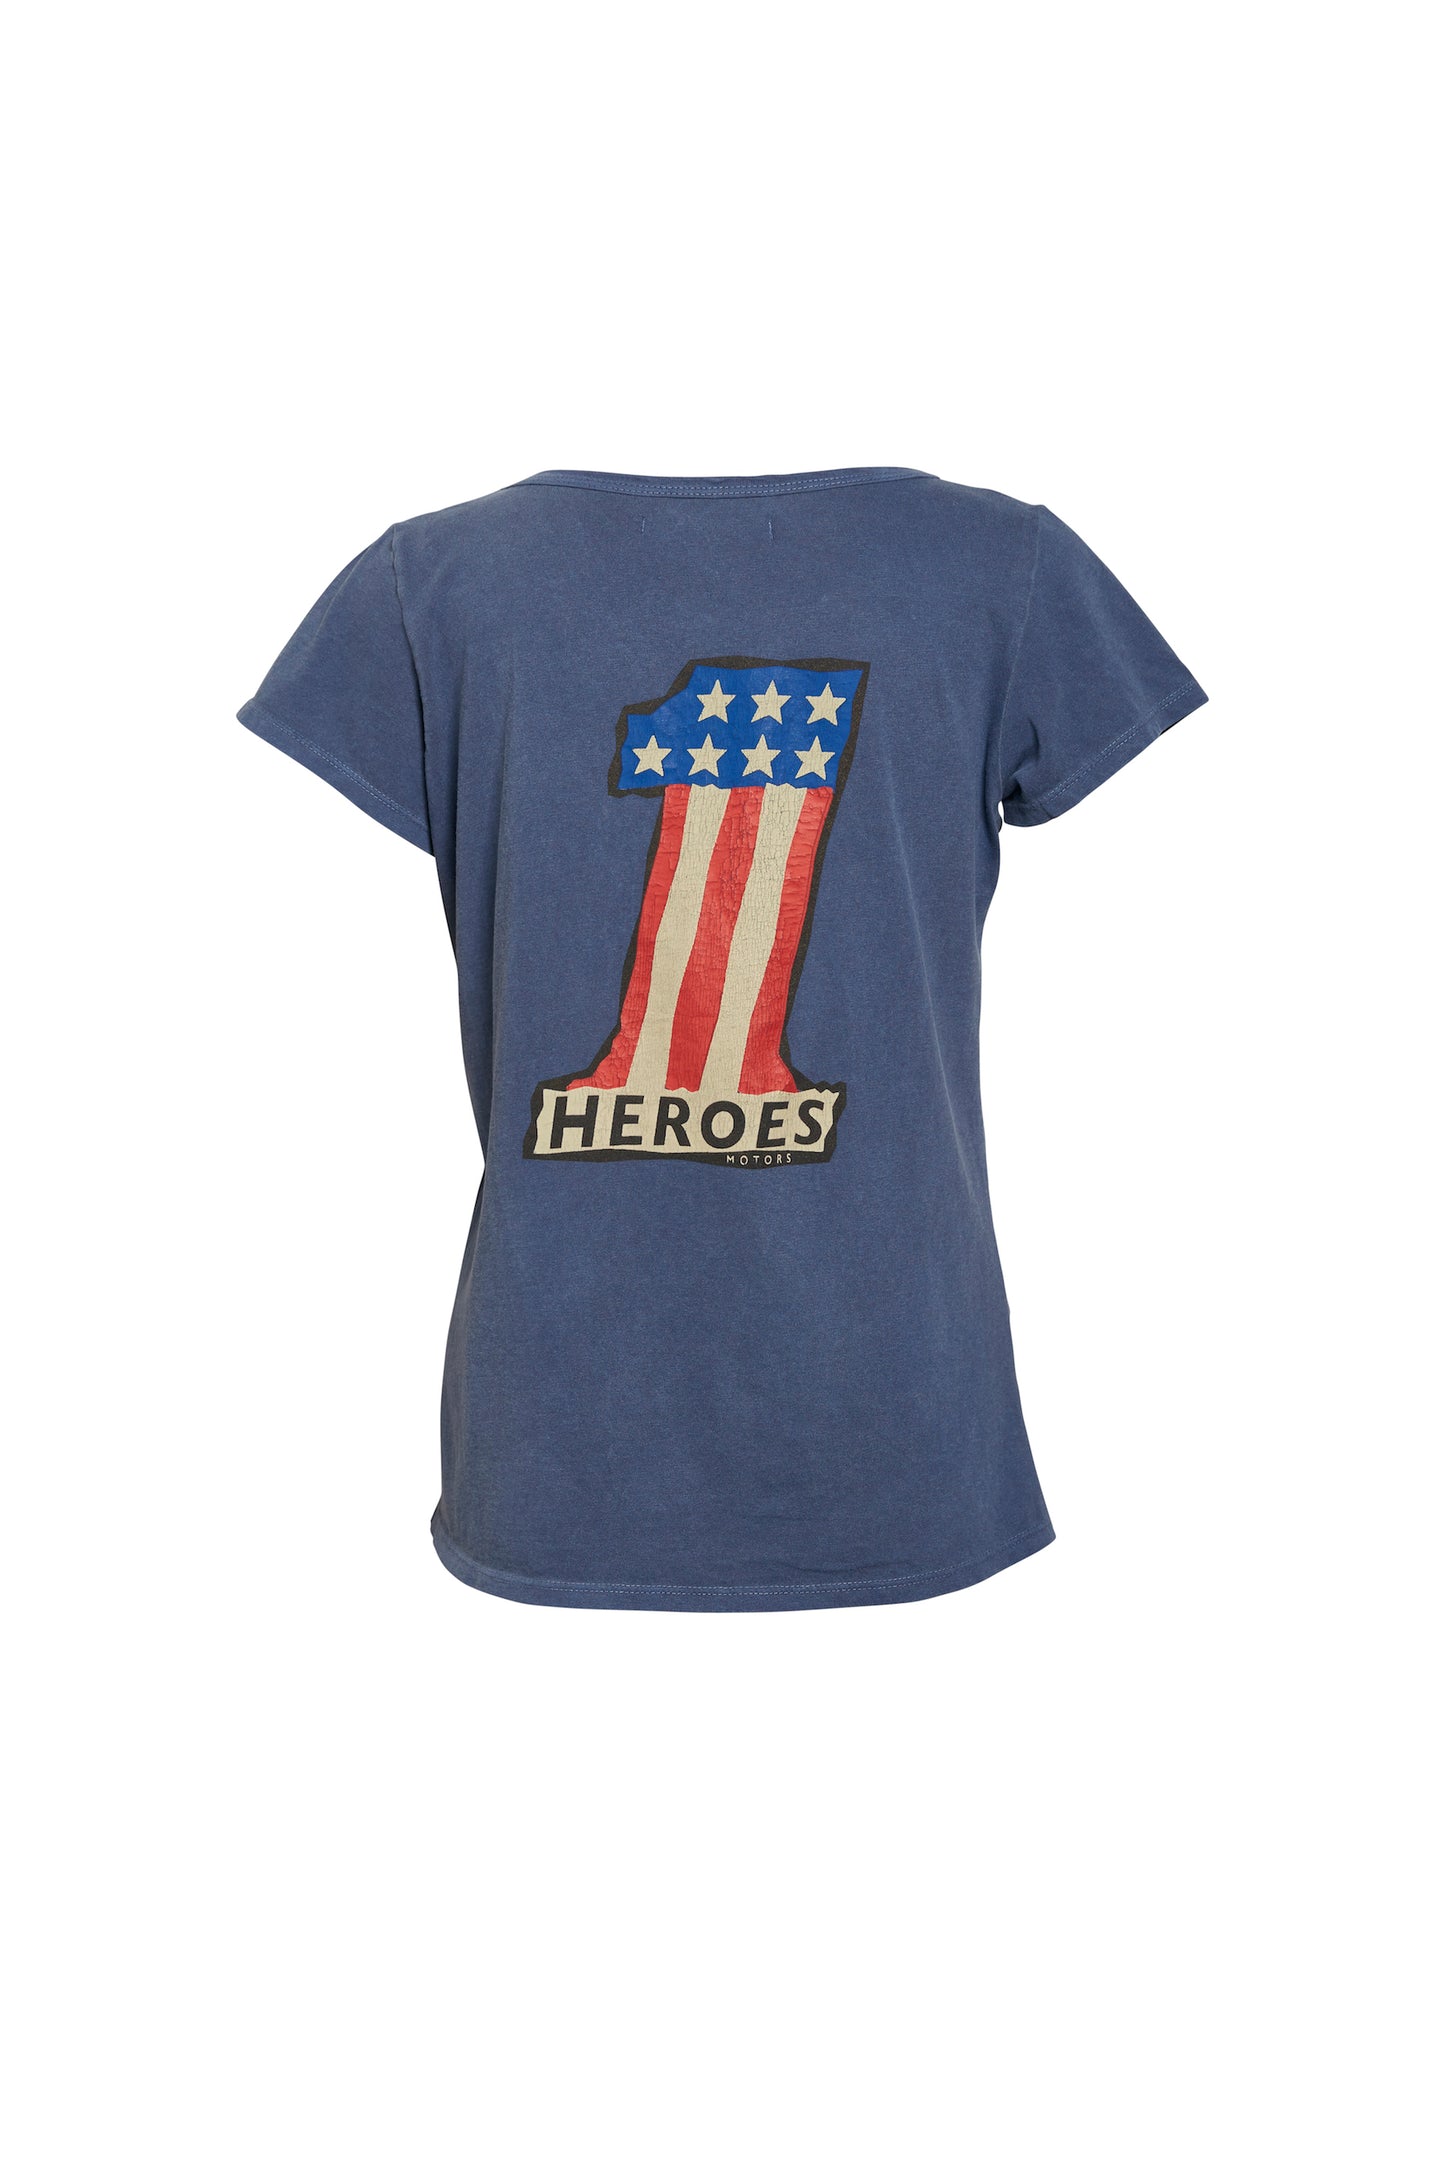 Tee-shirt  "Number One" Blue - Heroes Motorcycles